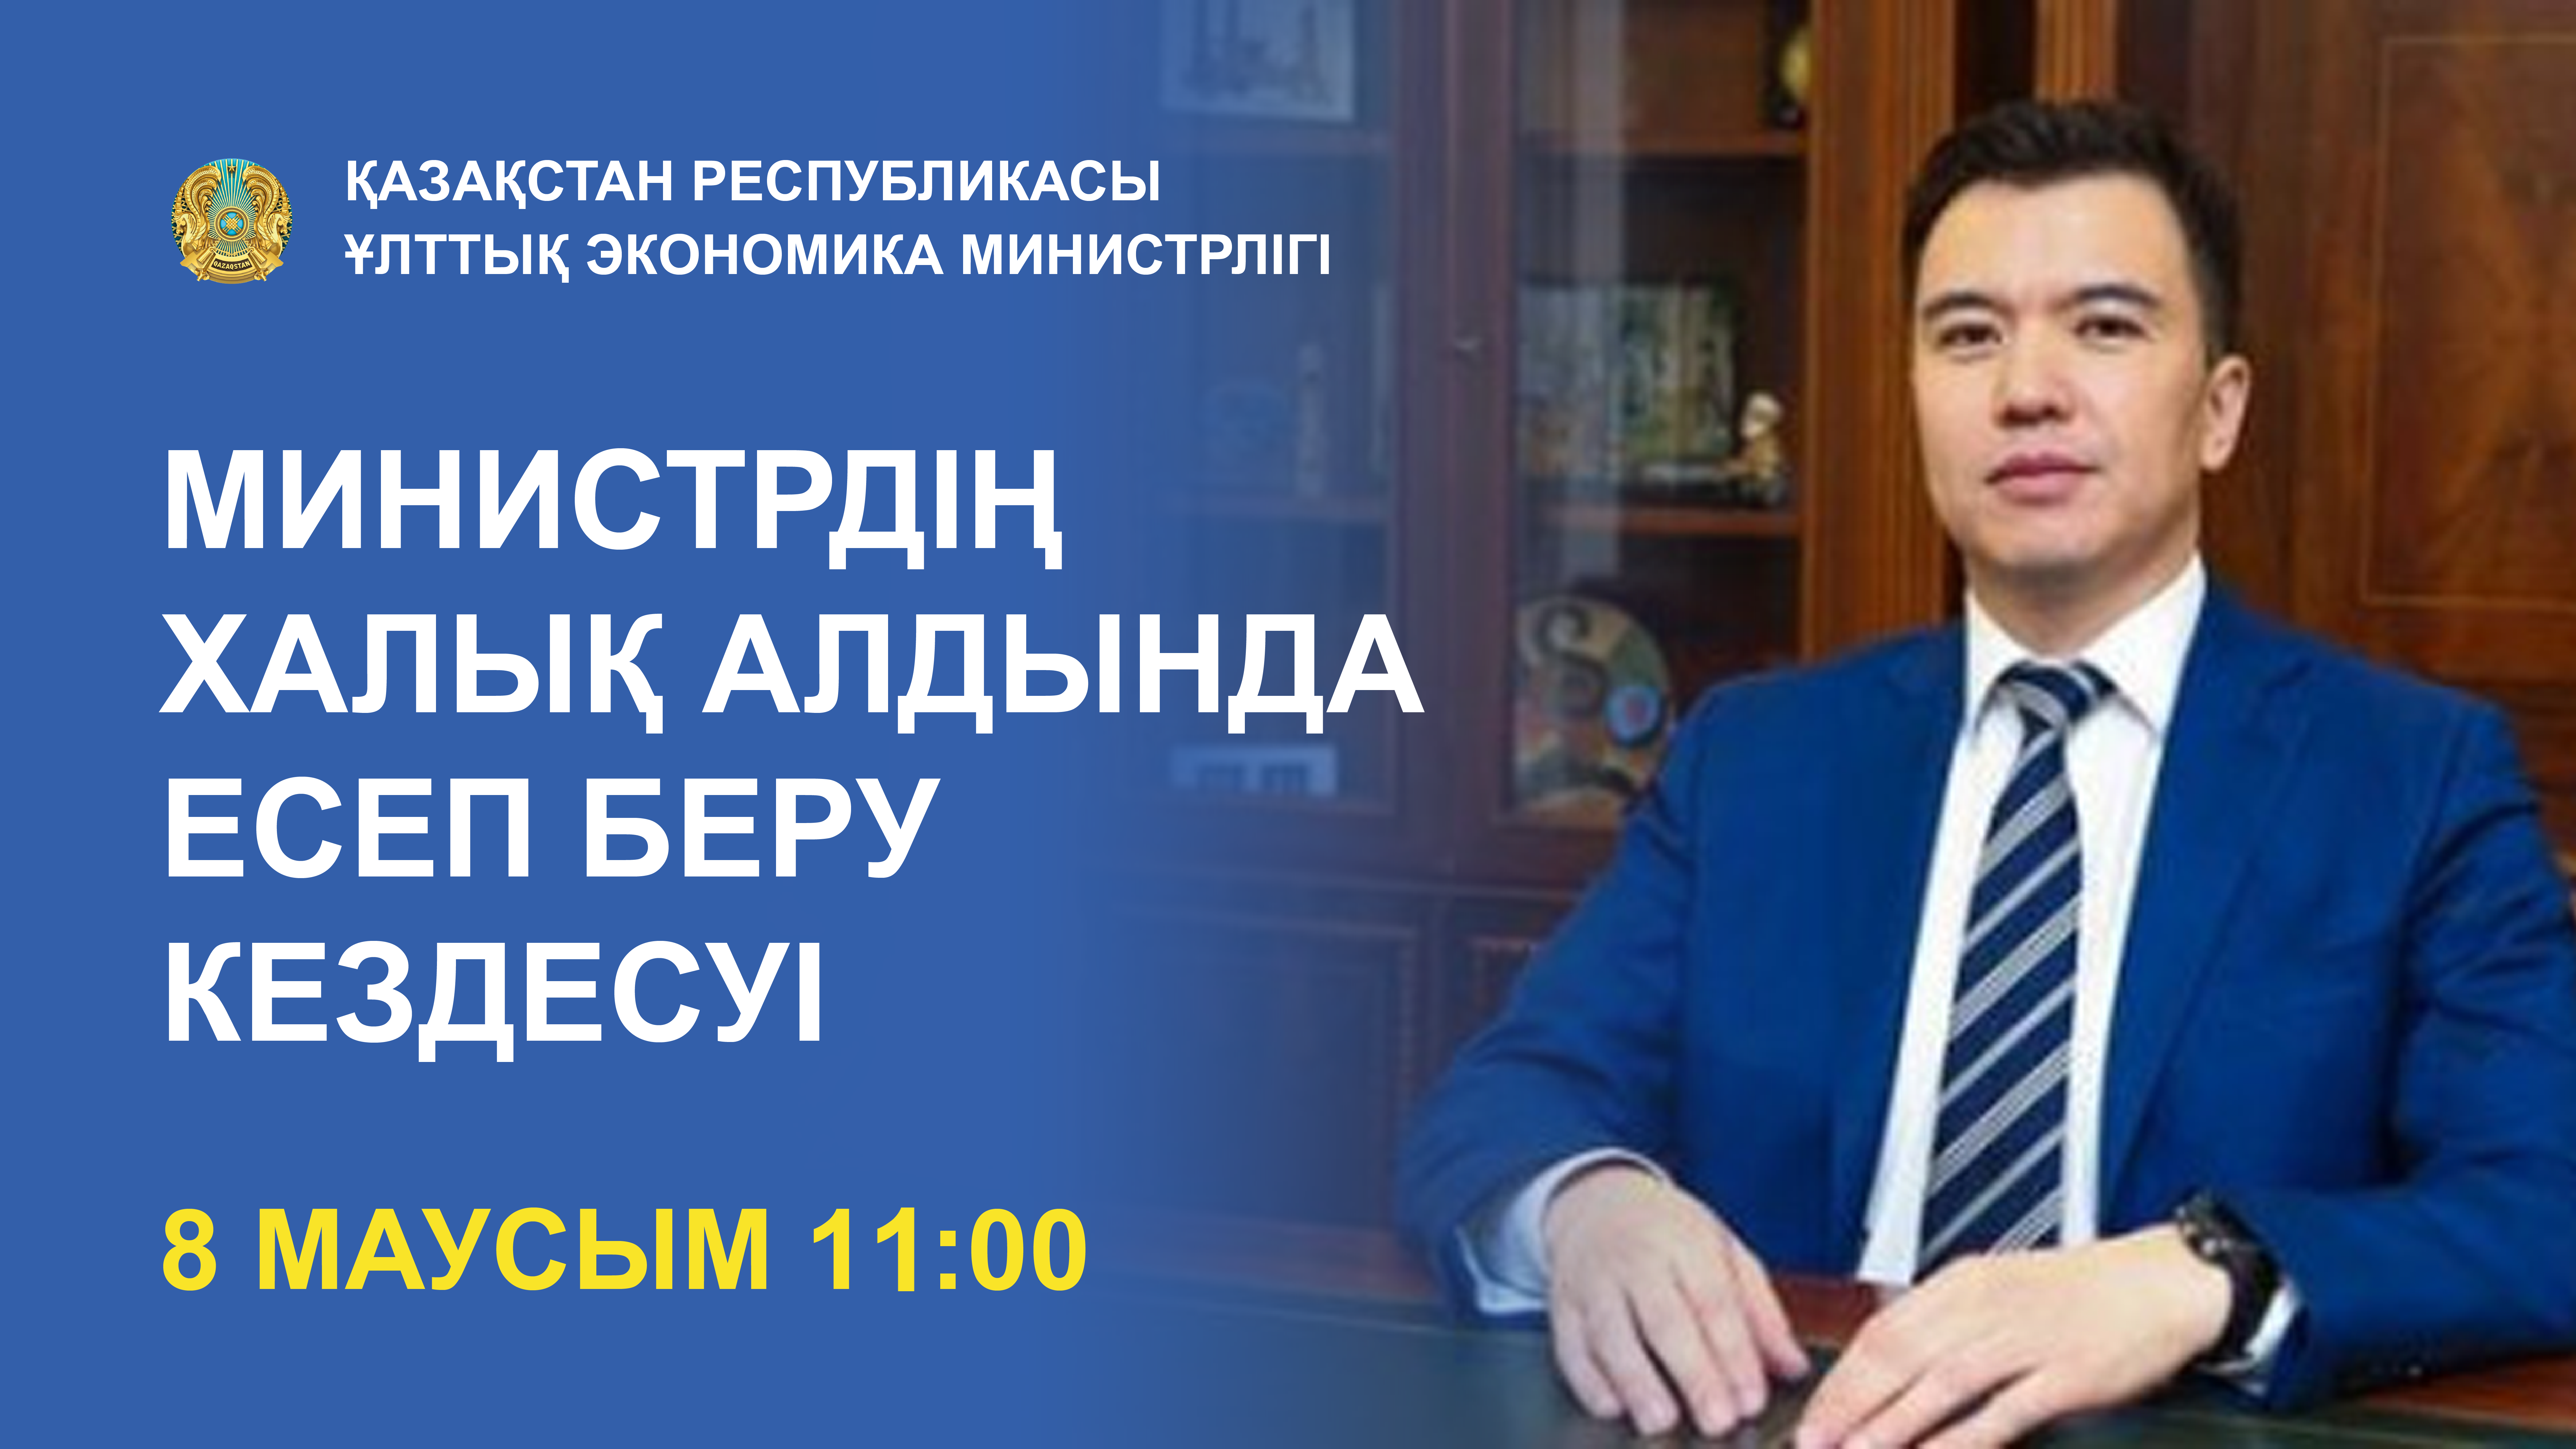 Отчетная встреча Министра национальной экономики Республики Казахстан